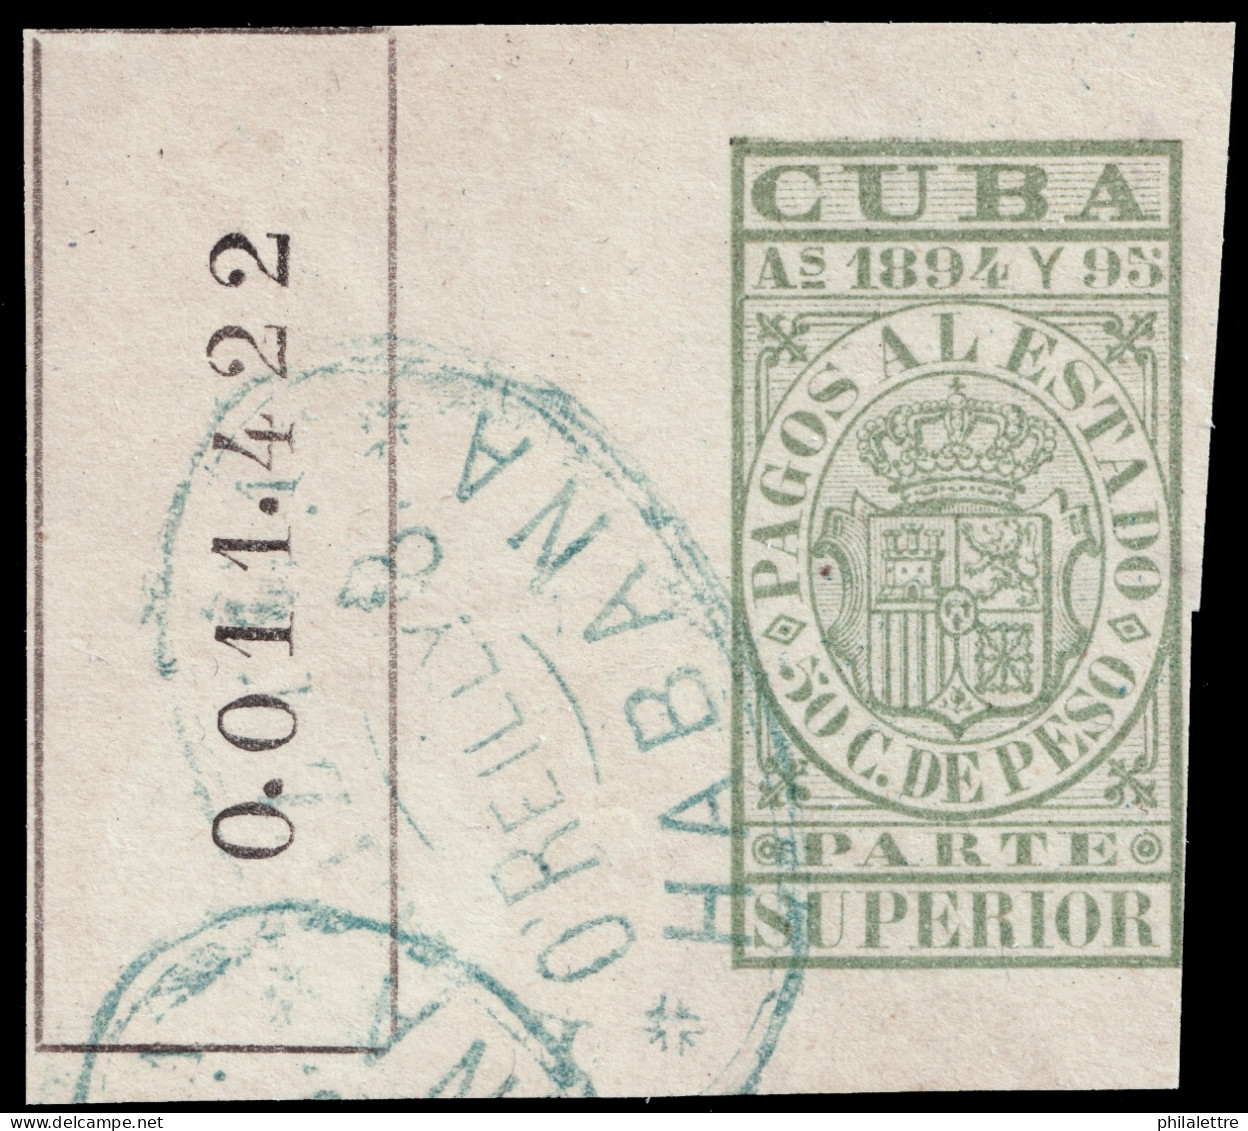 ESPAGNE / ESPANA - COLONIAS (Cuba) 1894/95 "PAGOS AL ESTADO" Fulcher 1139 50c Parte Superior Usado (0.011.422) - Cuba (1874-1898)